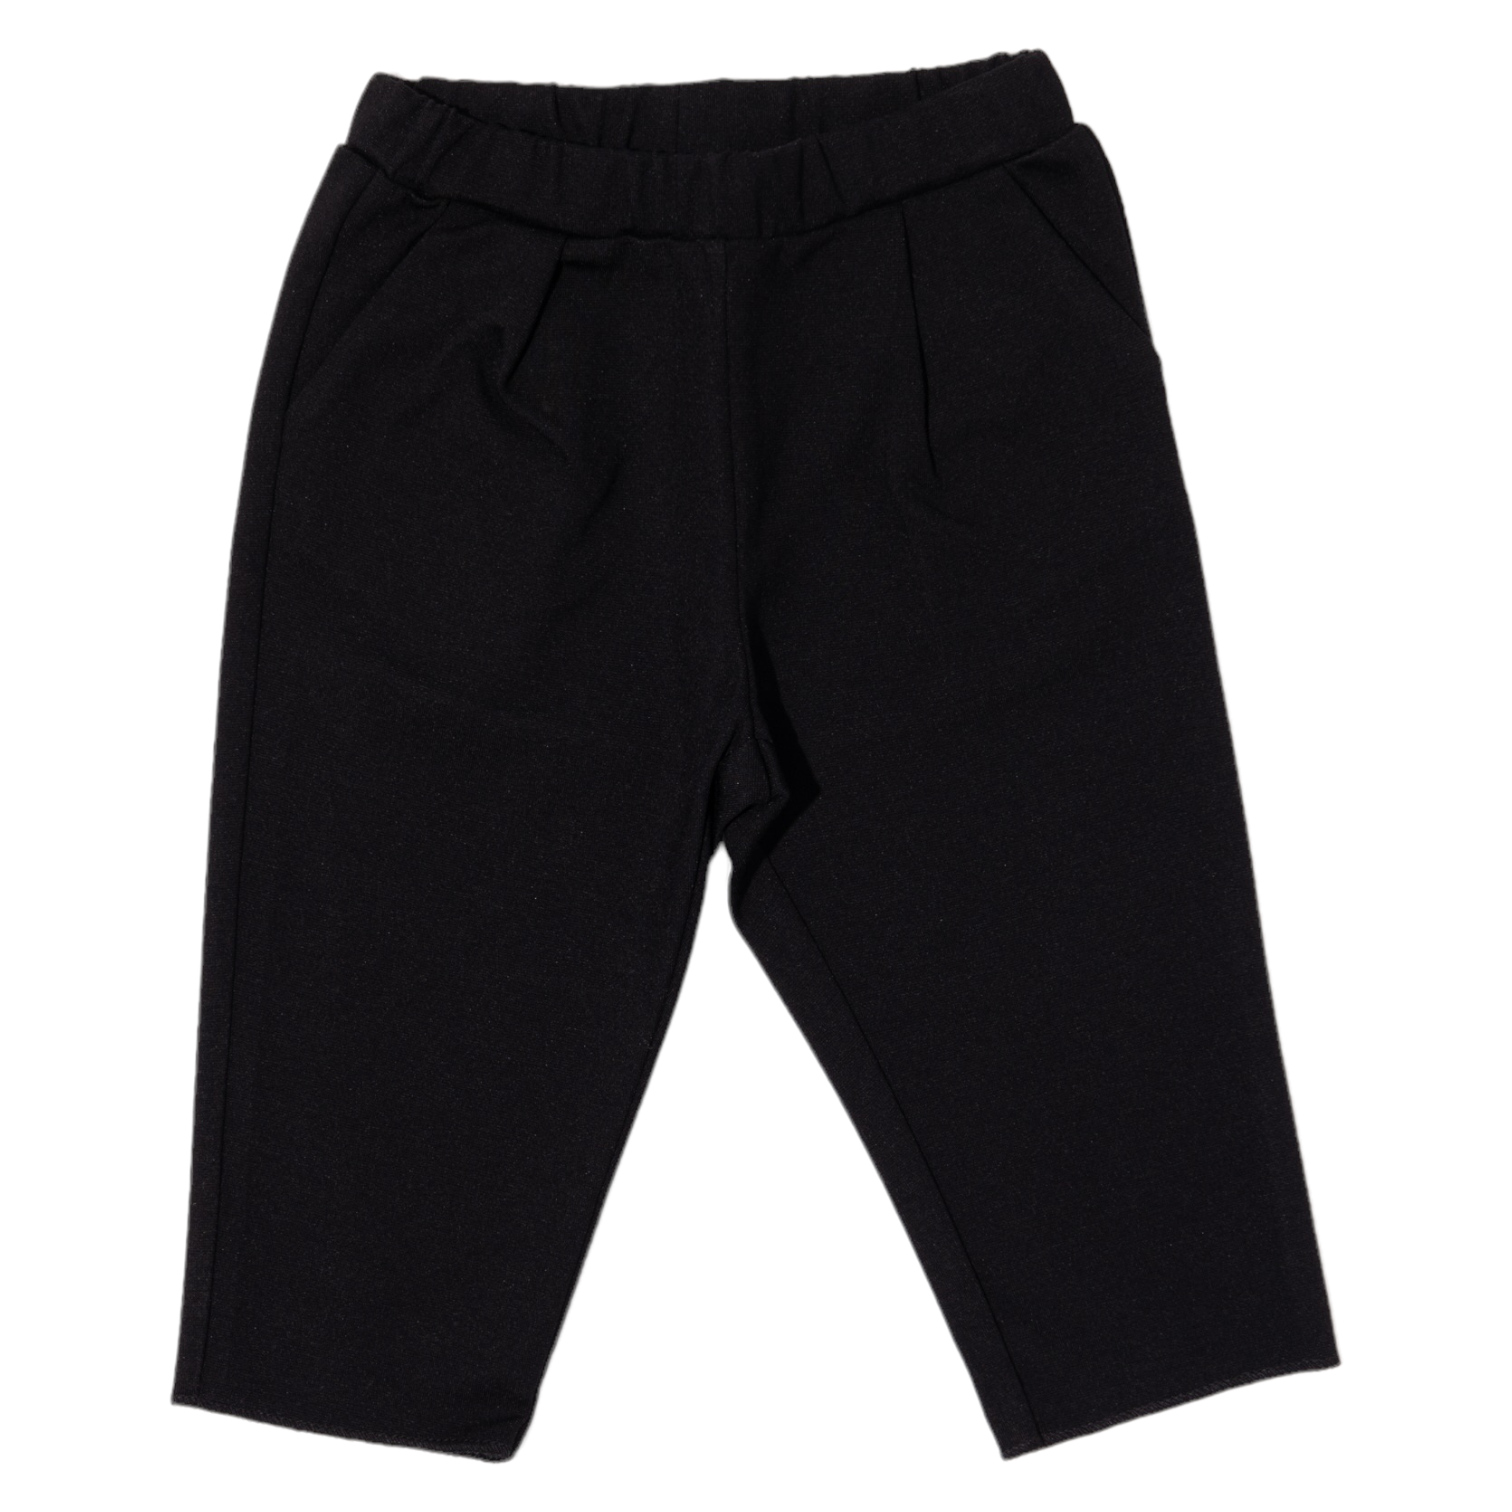 Pantalone nero con pences per neonati e bambini